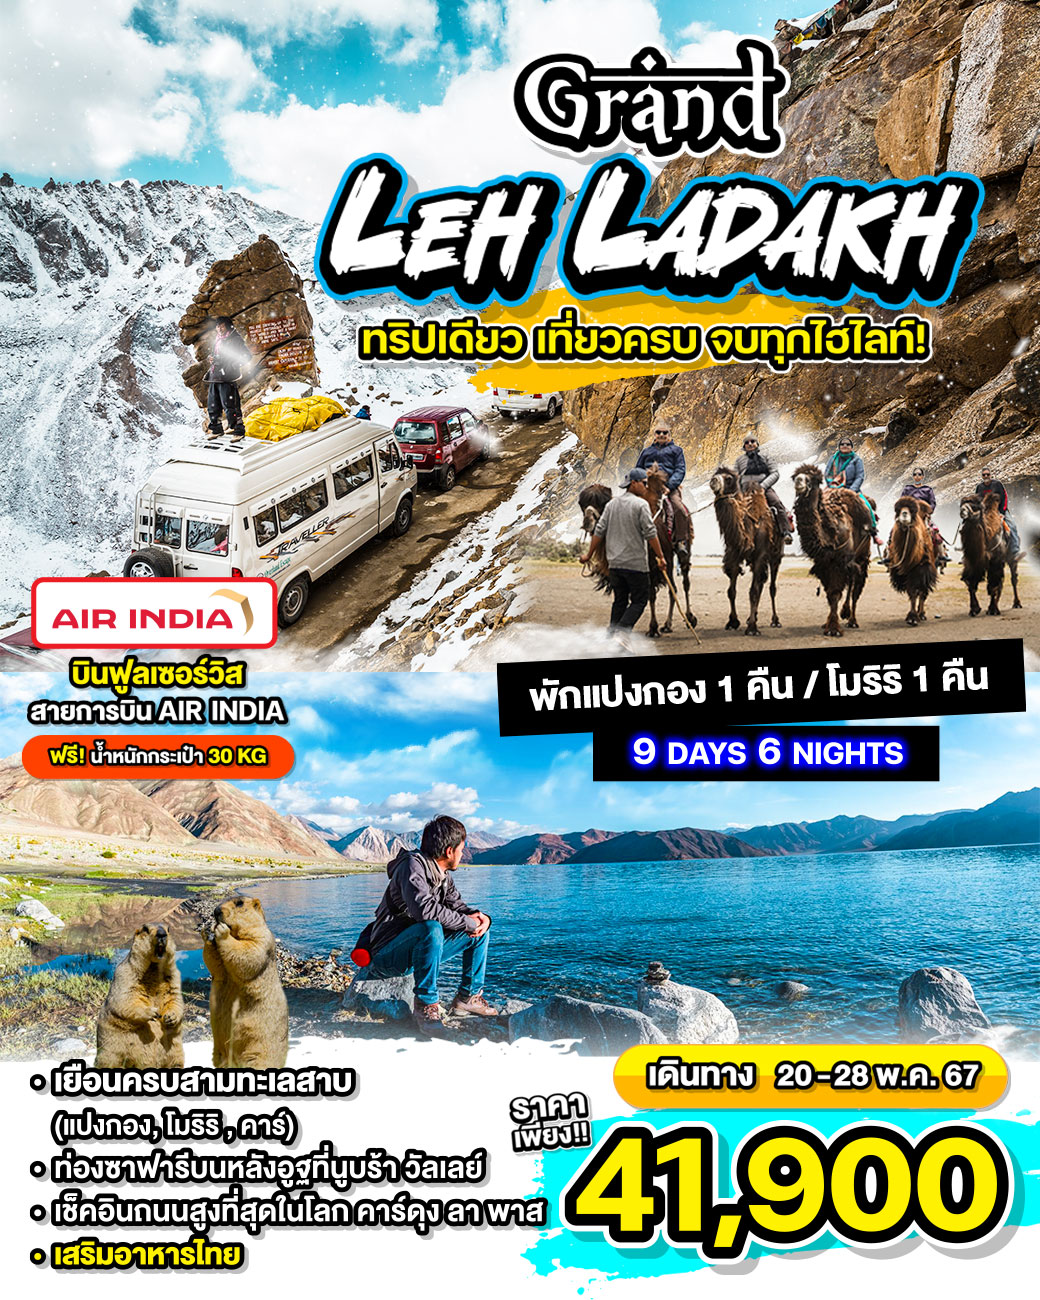 Grand Leh Ladakh ทริปเดียว เที่ยวครบ จบทุกไฮไลท์ 9วัน 6คืน by Air India